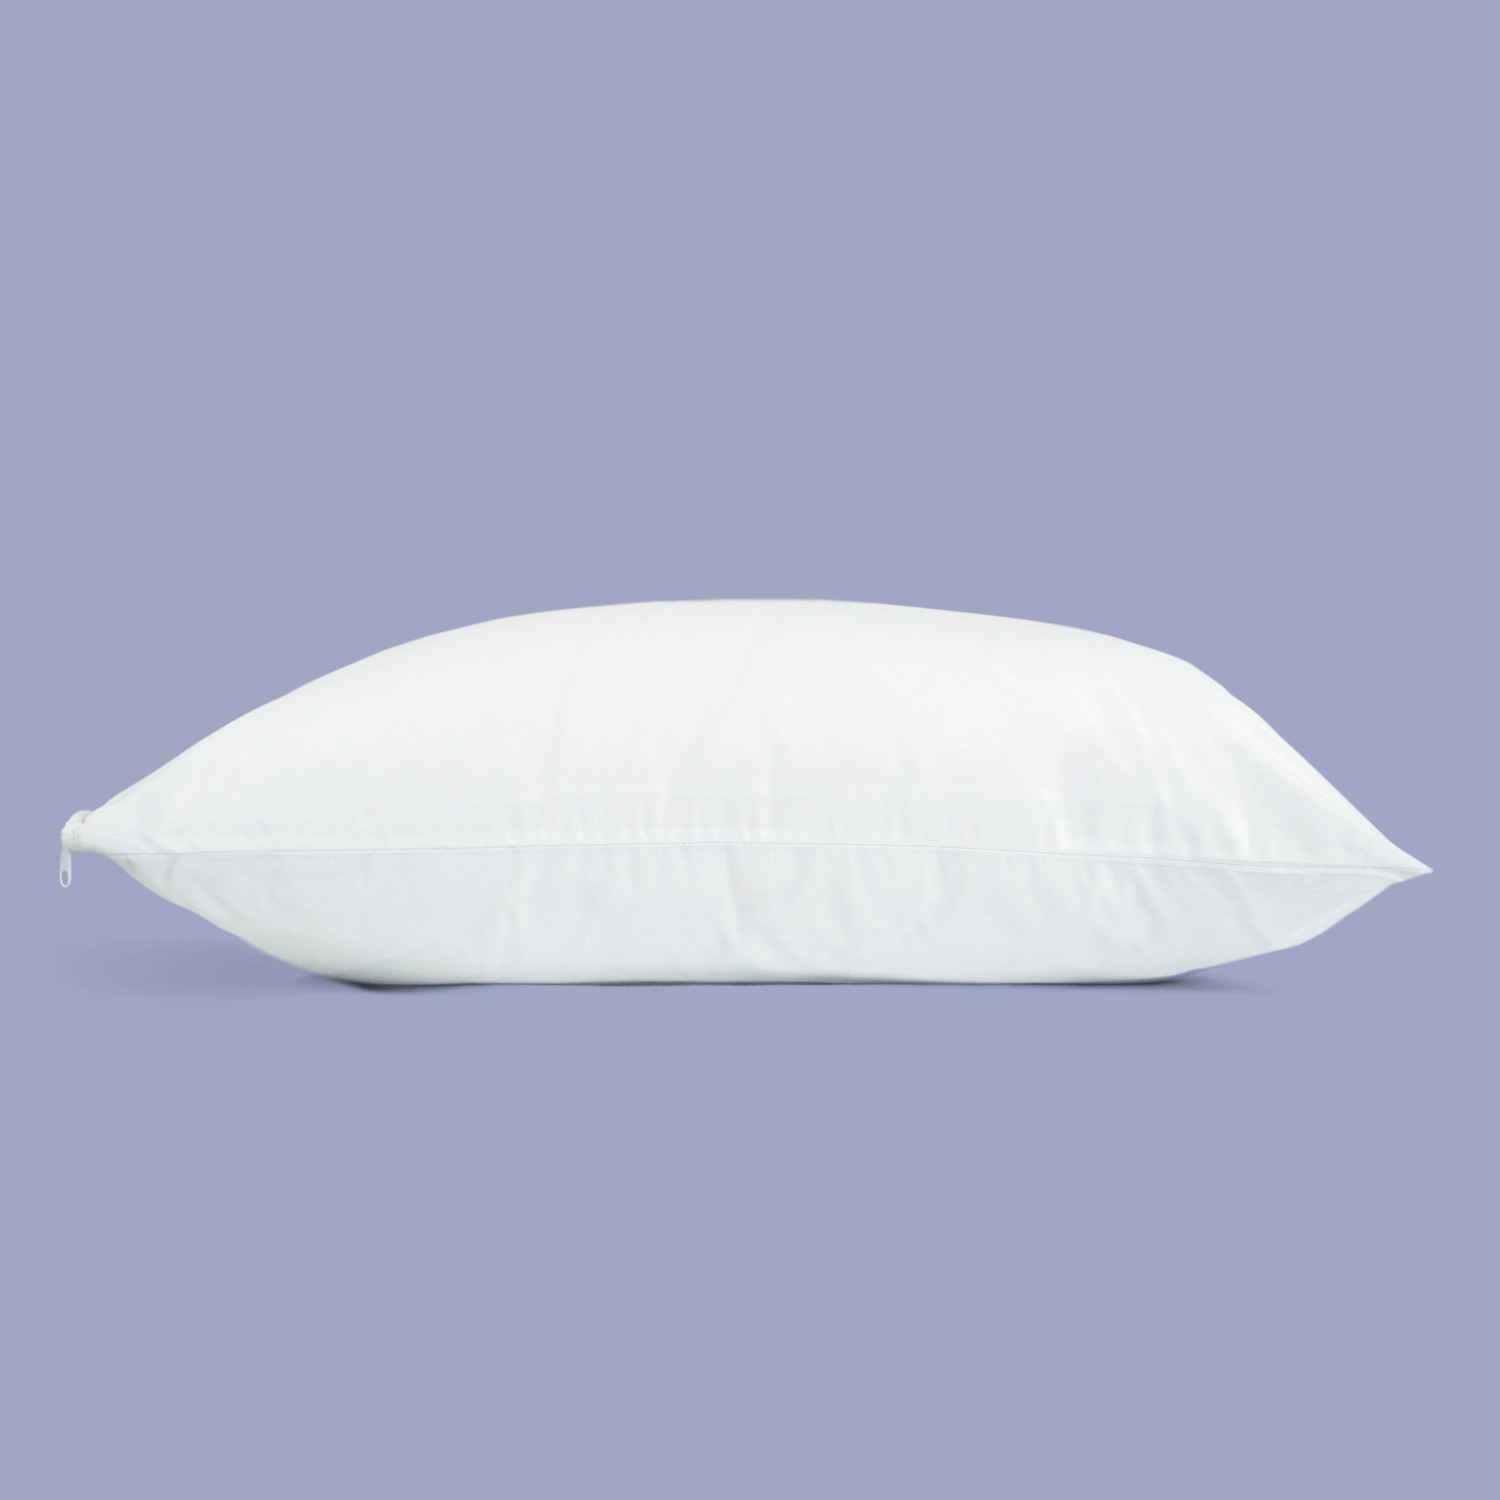 Una imagen en formato gif sonde se muestra un fondo en tono morado y una almohada blanca y sobre ella aparece y desaparece una sandia. 